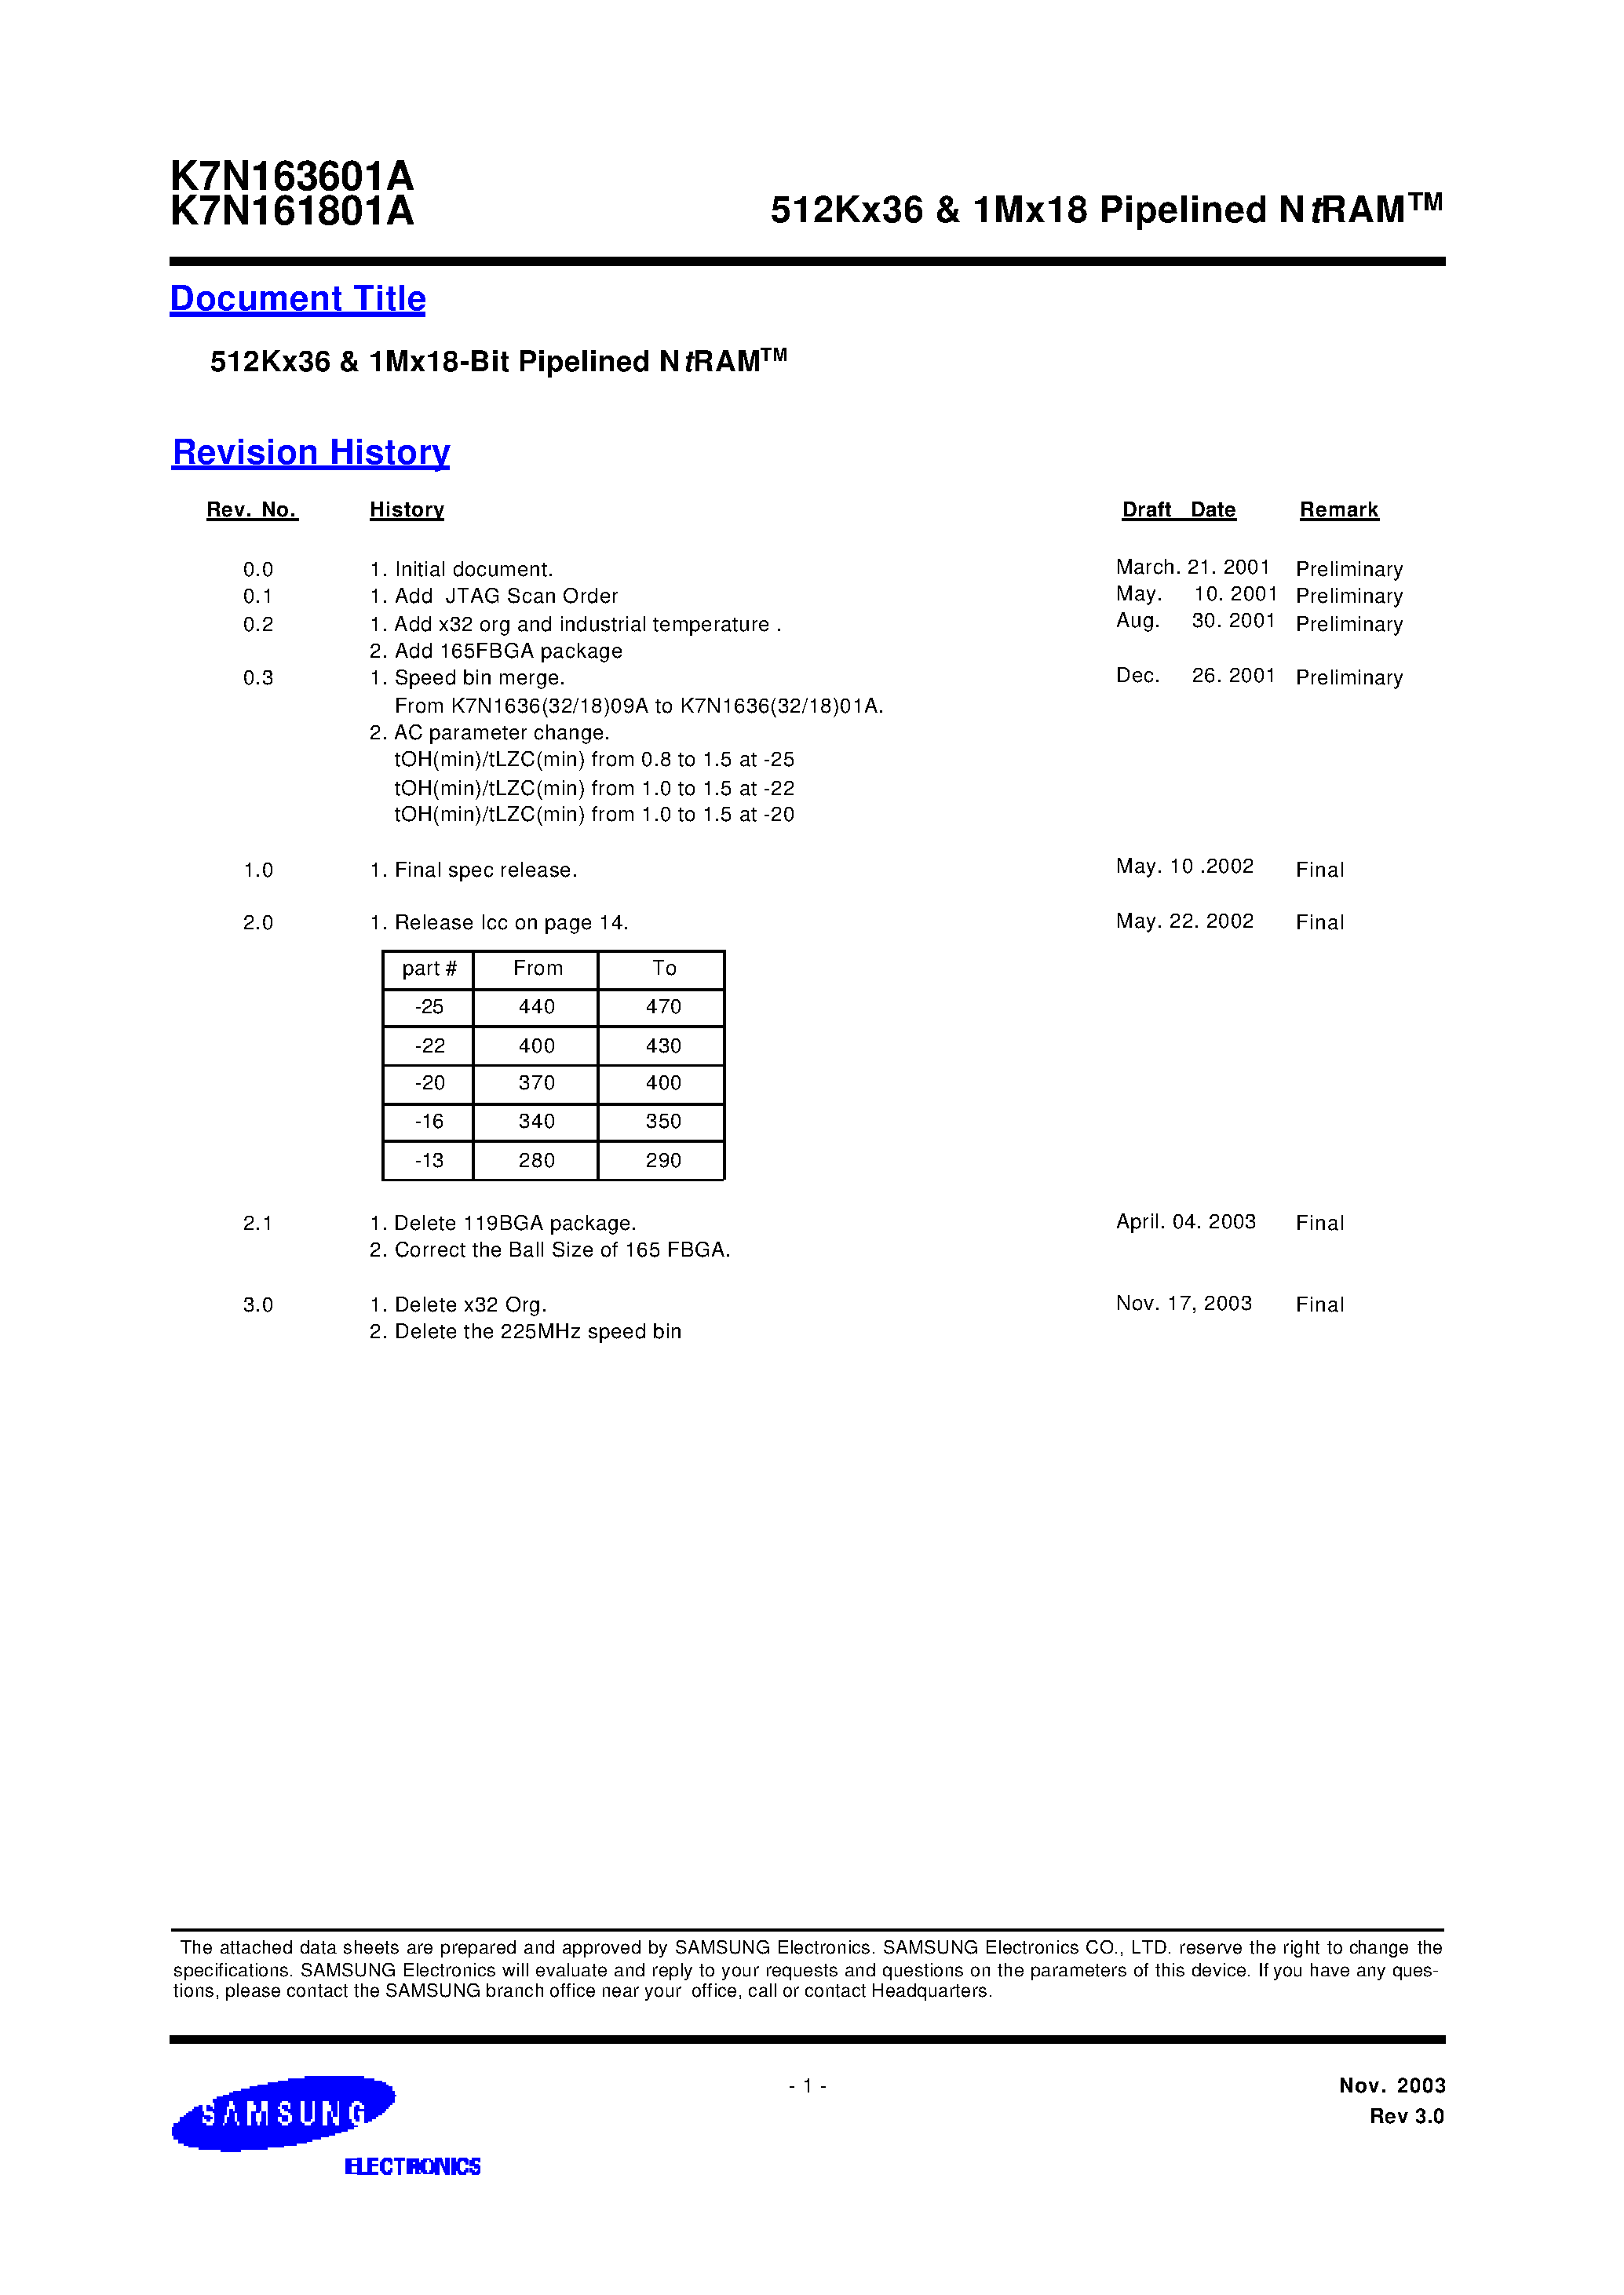 Даташит K7N163601A-Q(F)C(I)20-512Kx36 & 1Mx18 Pipelined NtRAM страница 1